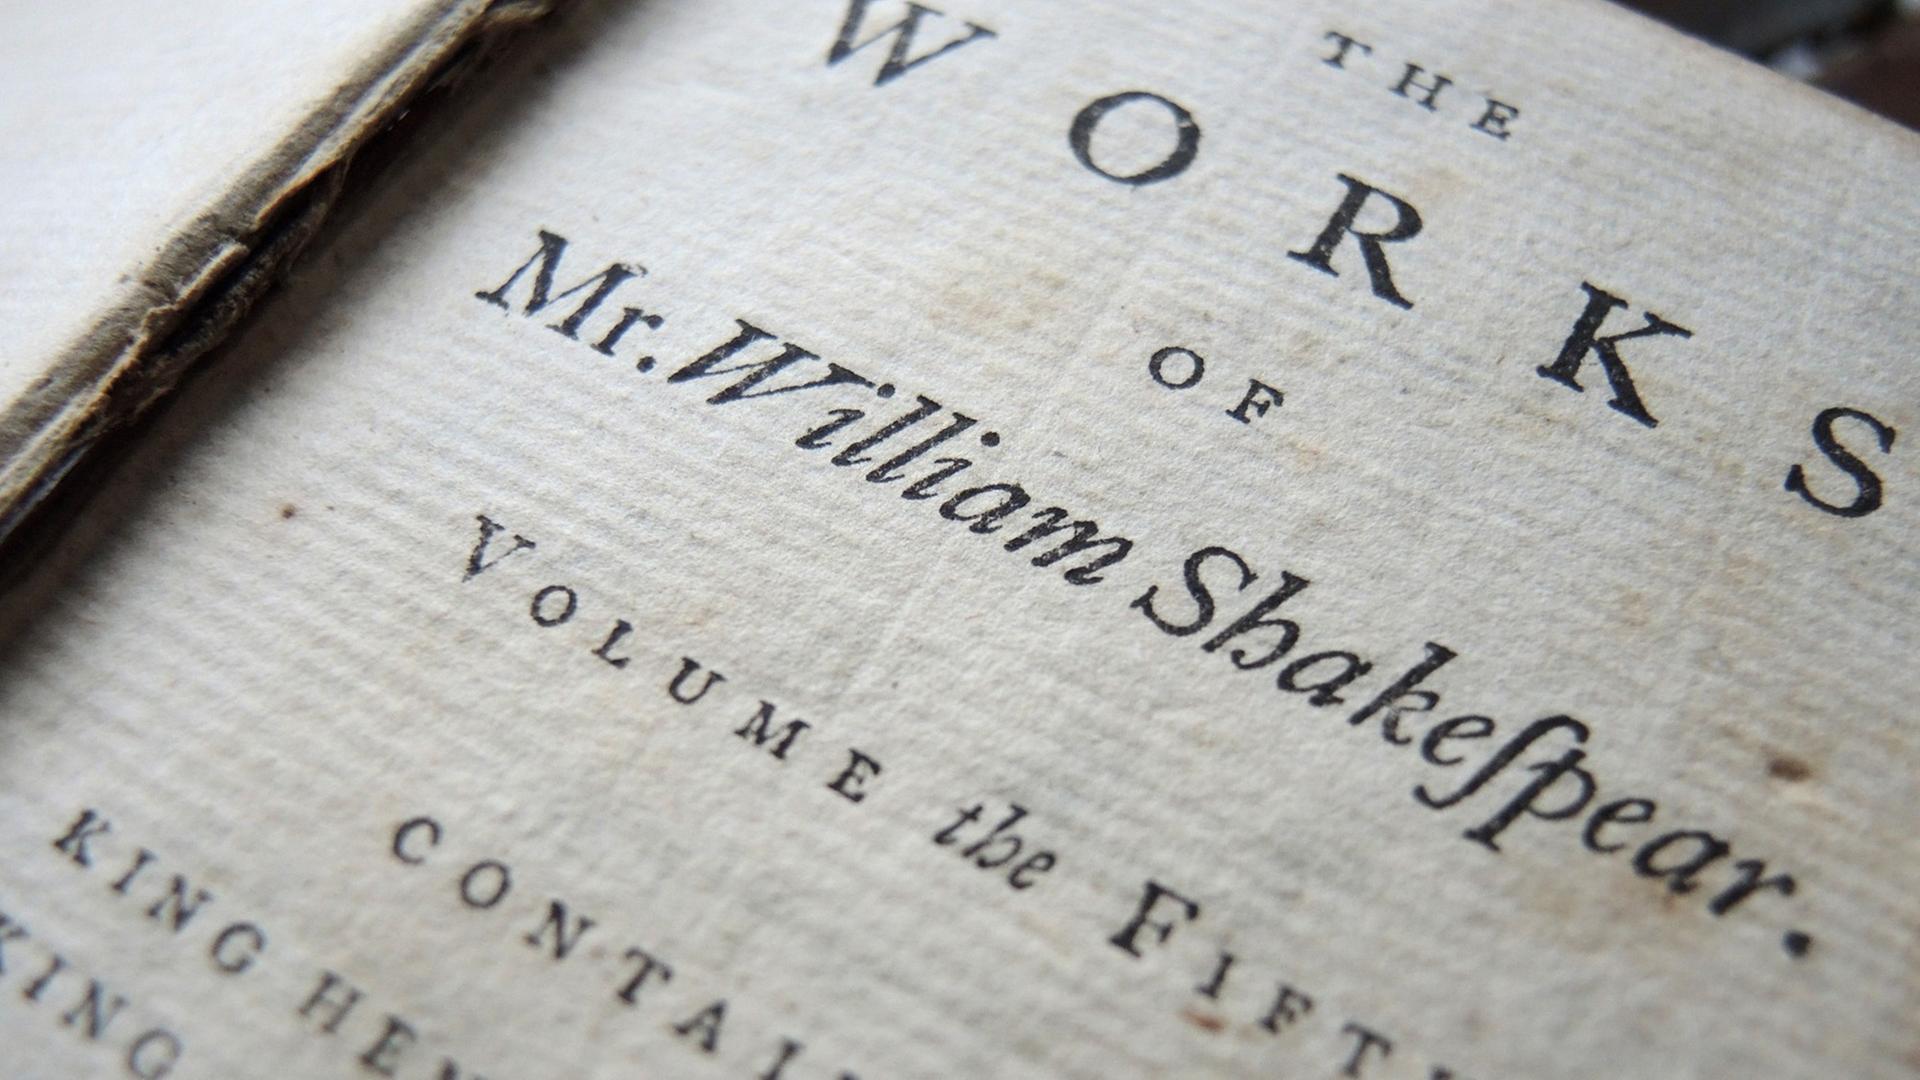 Ein Band einer neunbändigen Gesamtausgabe aus dem Jahr 1760 mit den Werken von William Shakespeare liegt auf einem Tisch.